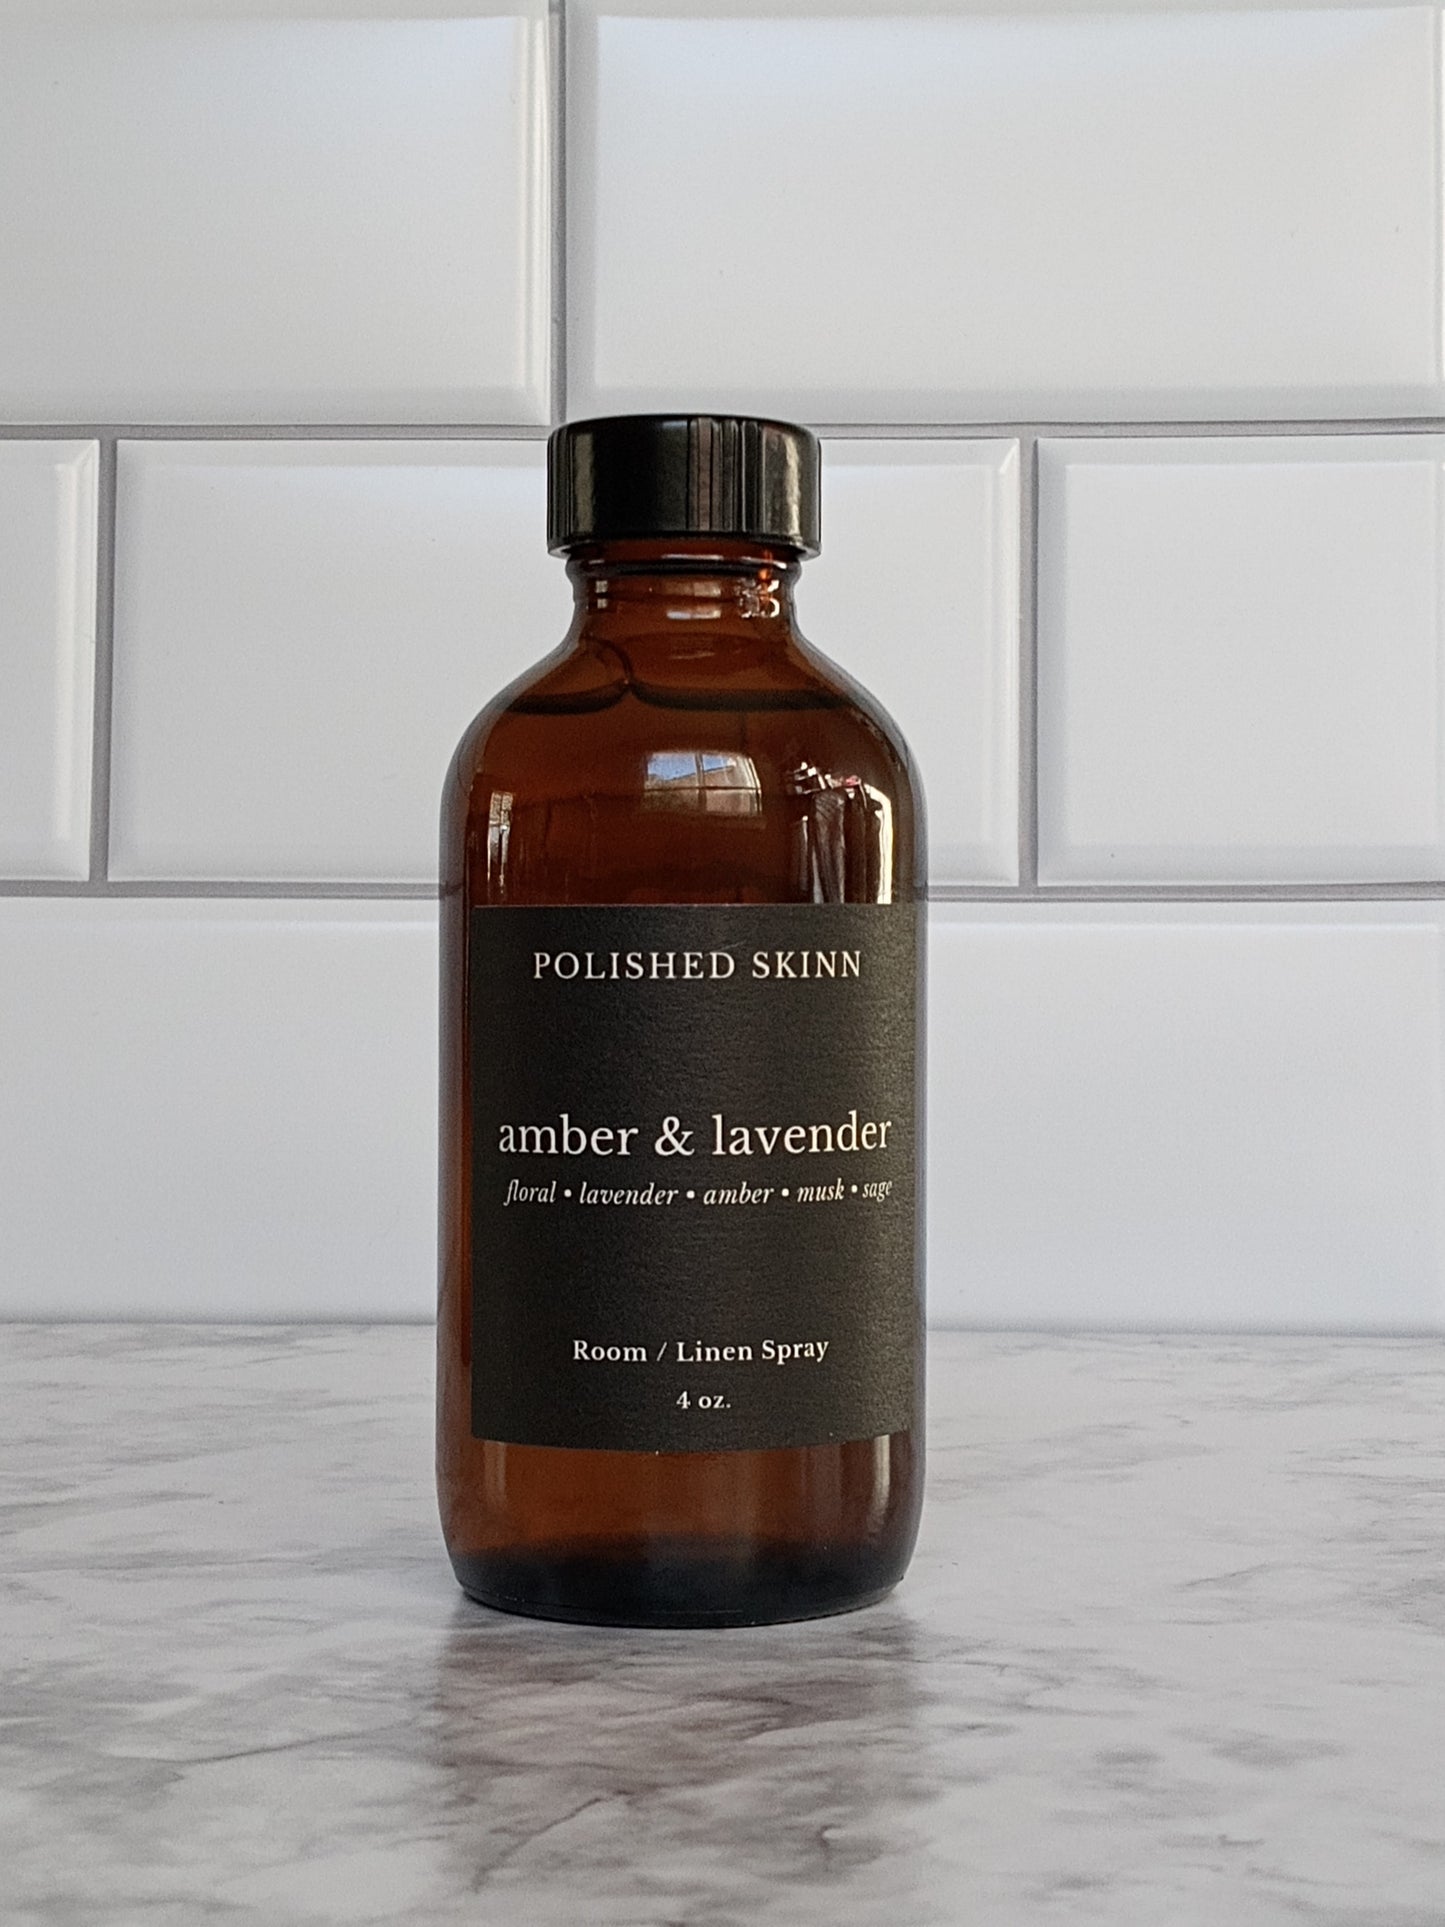 Amber & Lavender Room/Linen Spray